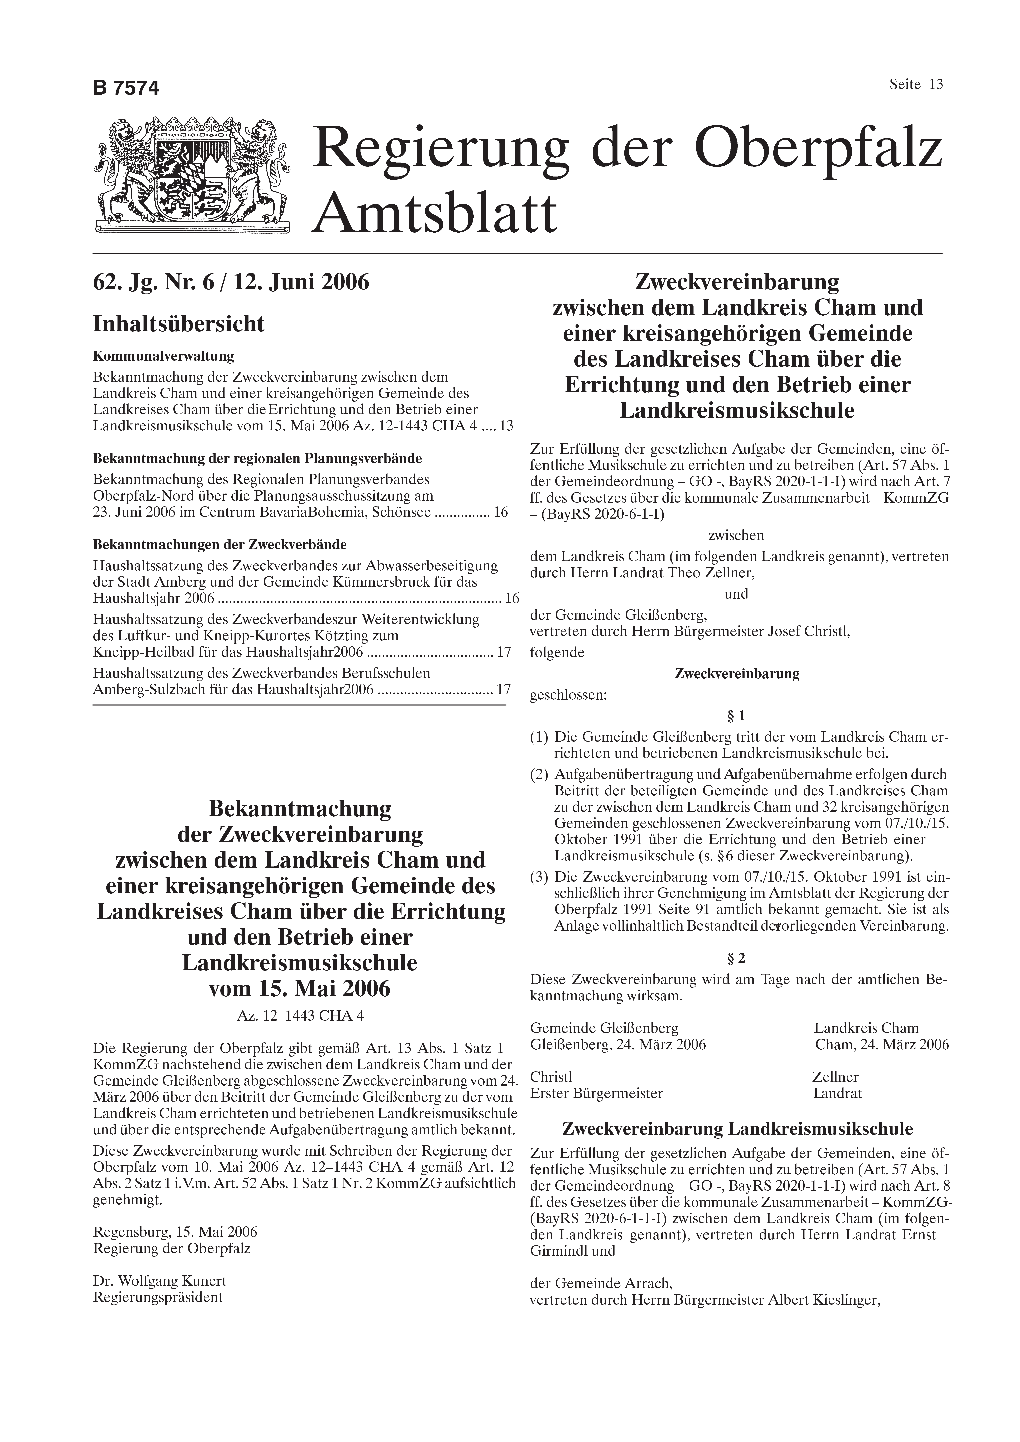 Amtsblatt Der Regierung Der Oberpfalz Nr.6/12.06.2006